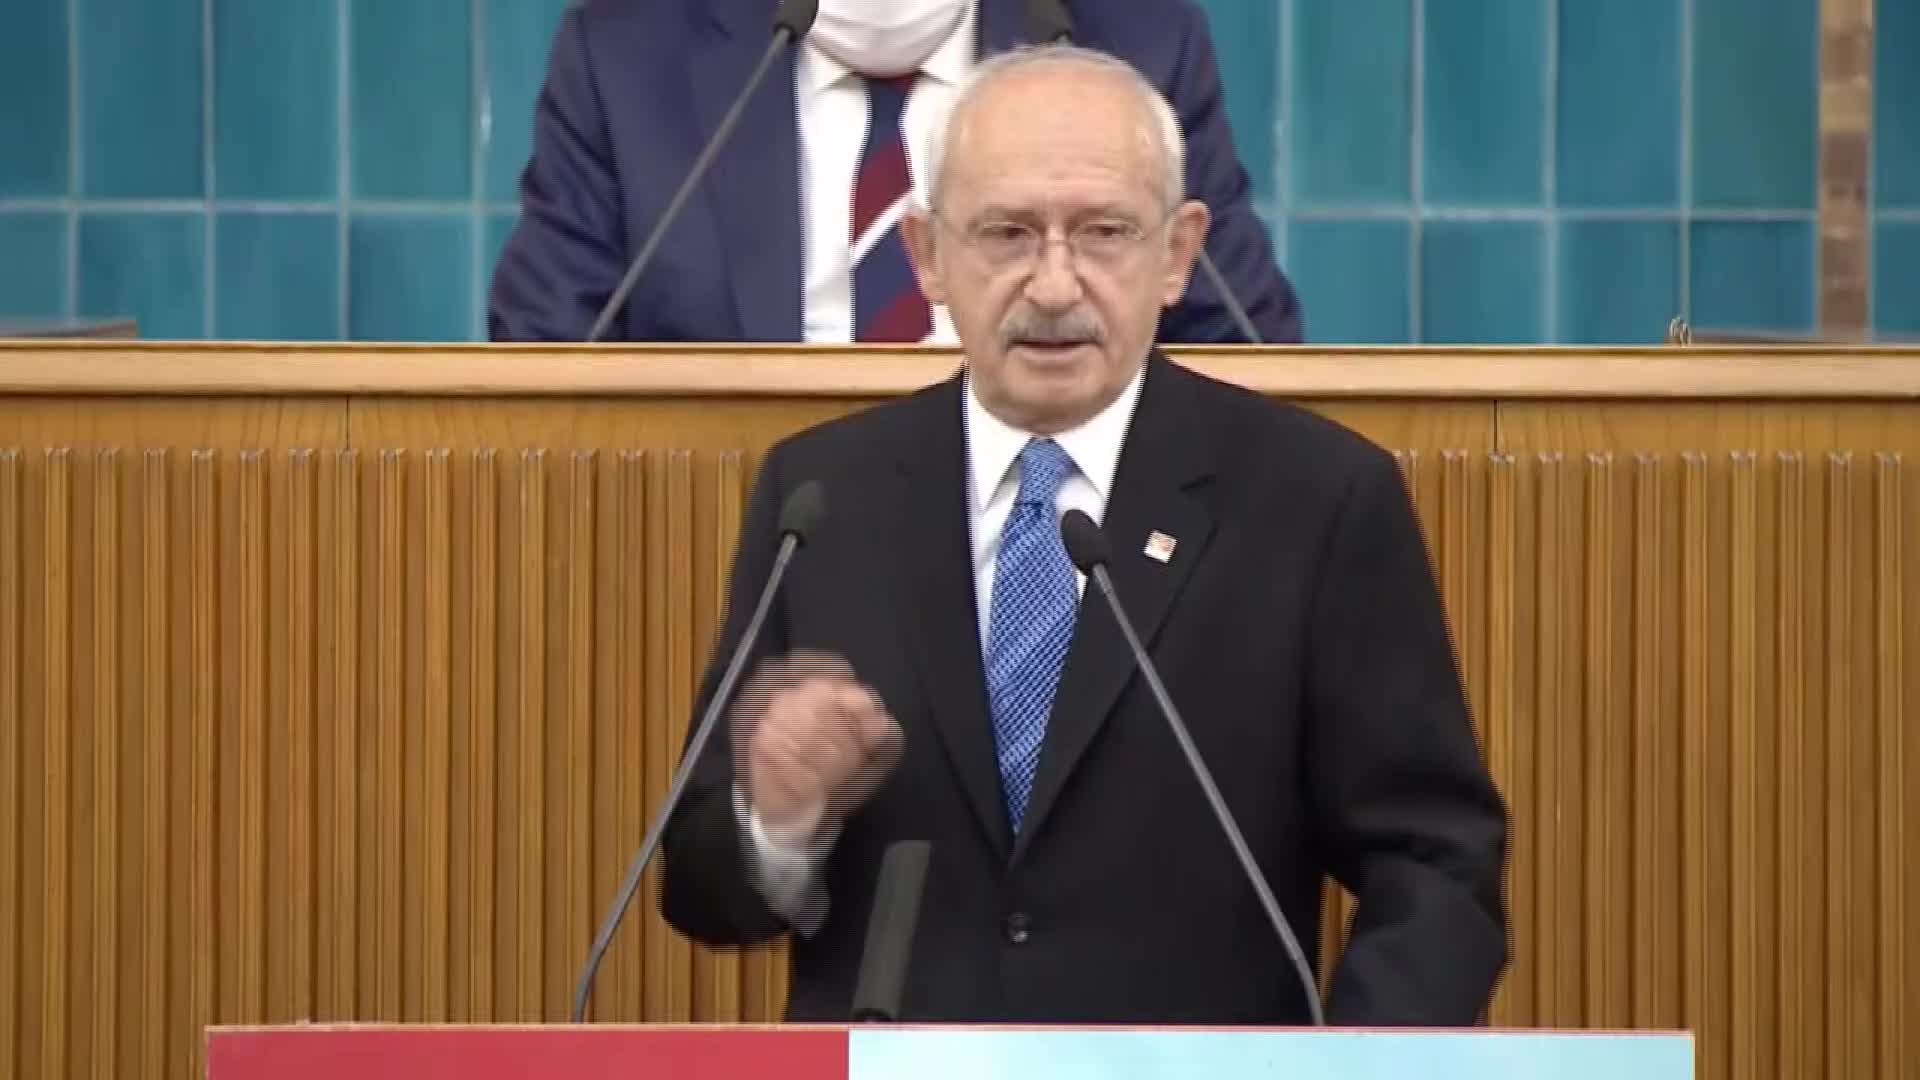 CHP lideri Kılıçdaroğlu: "128 milyar doların üzerine kim çöktü?"